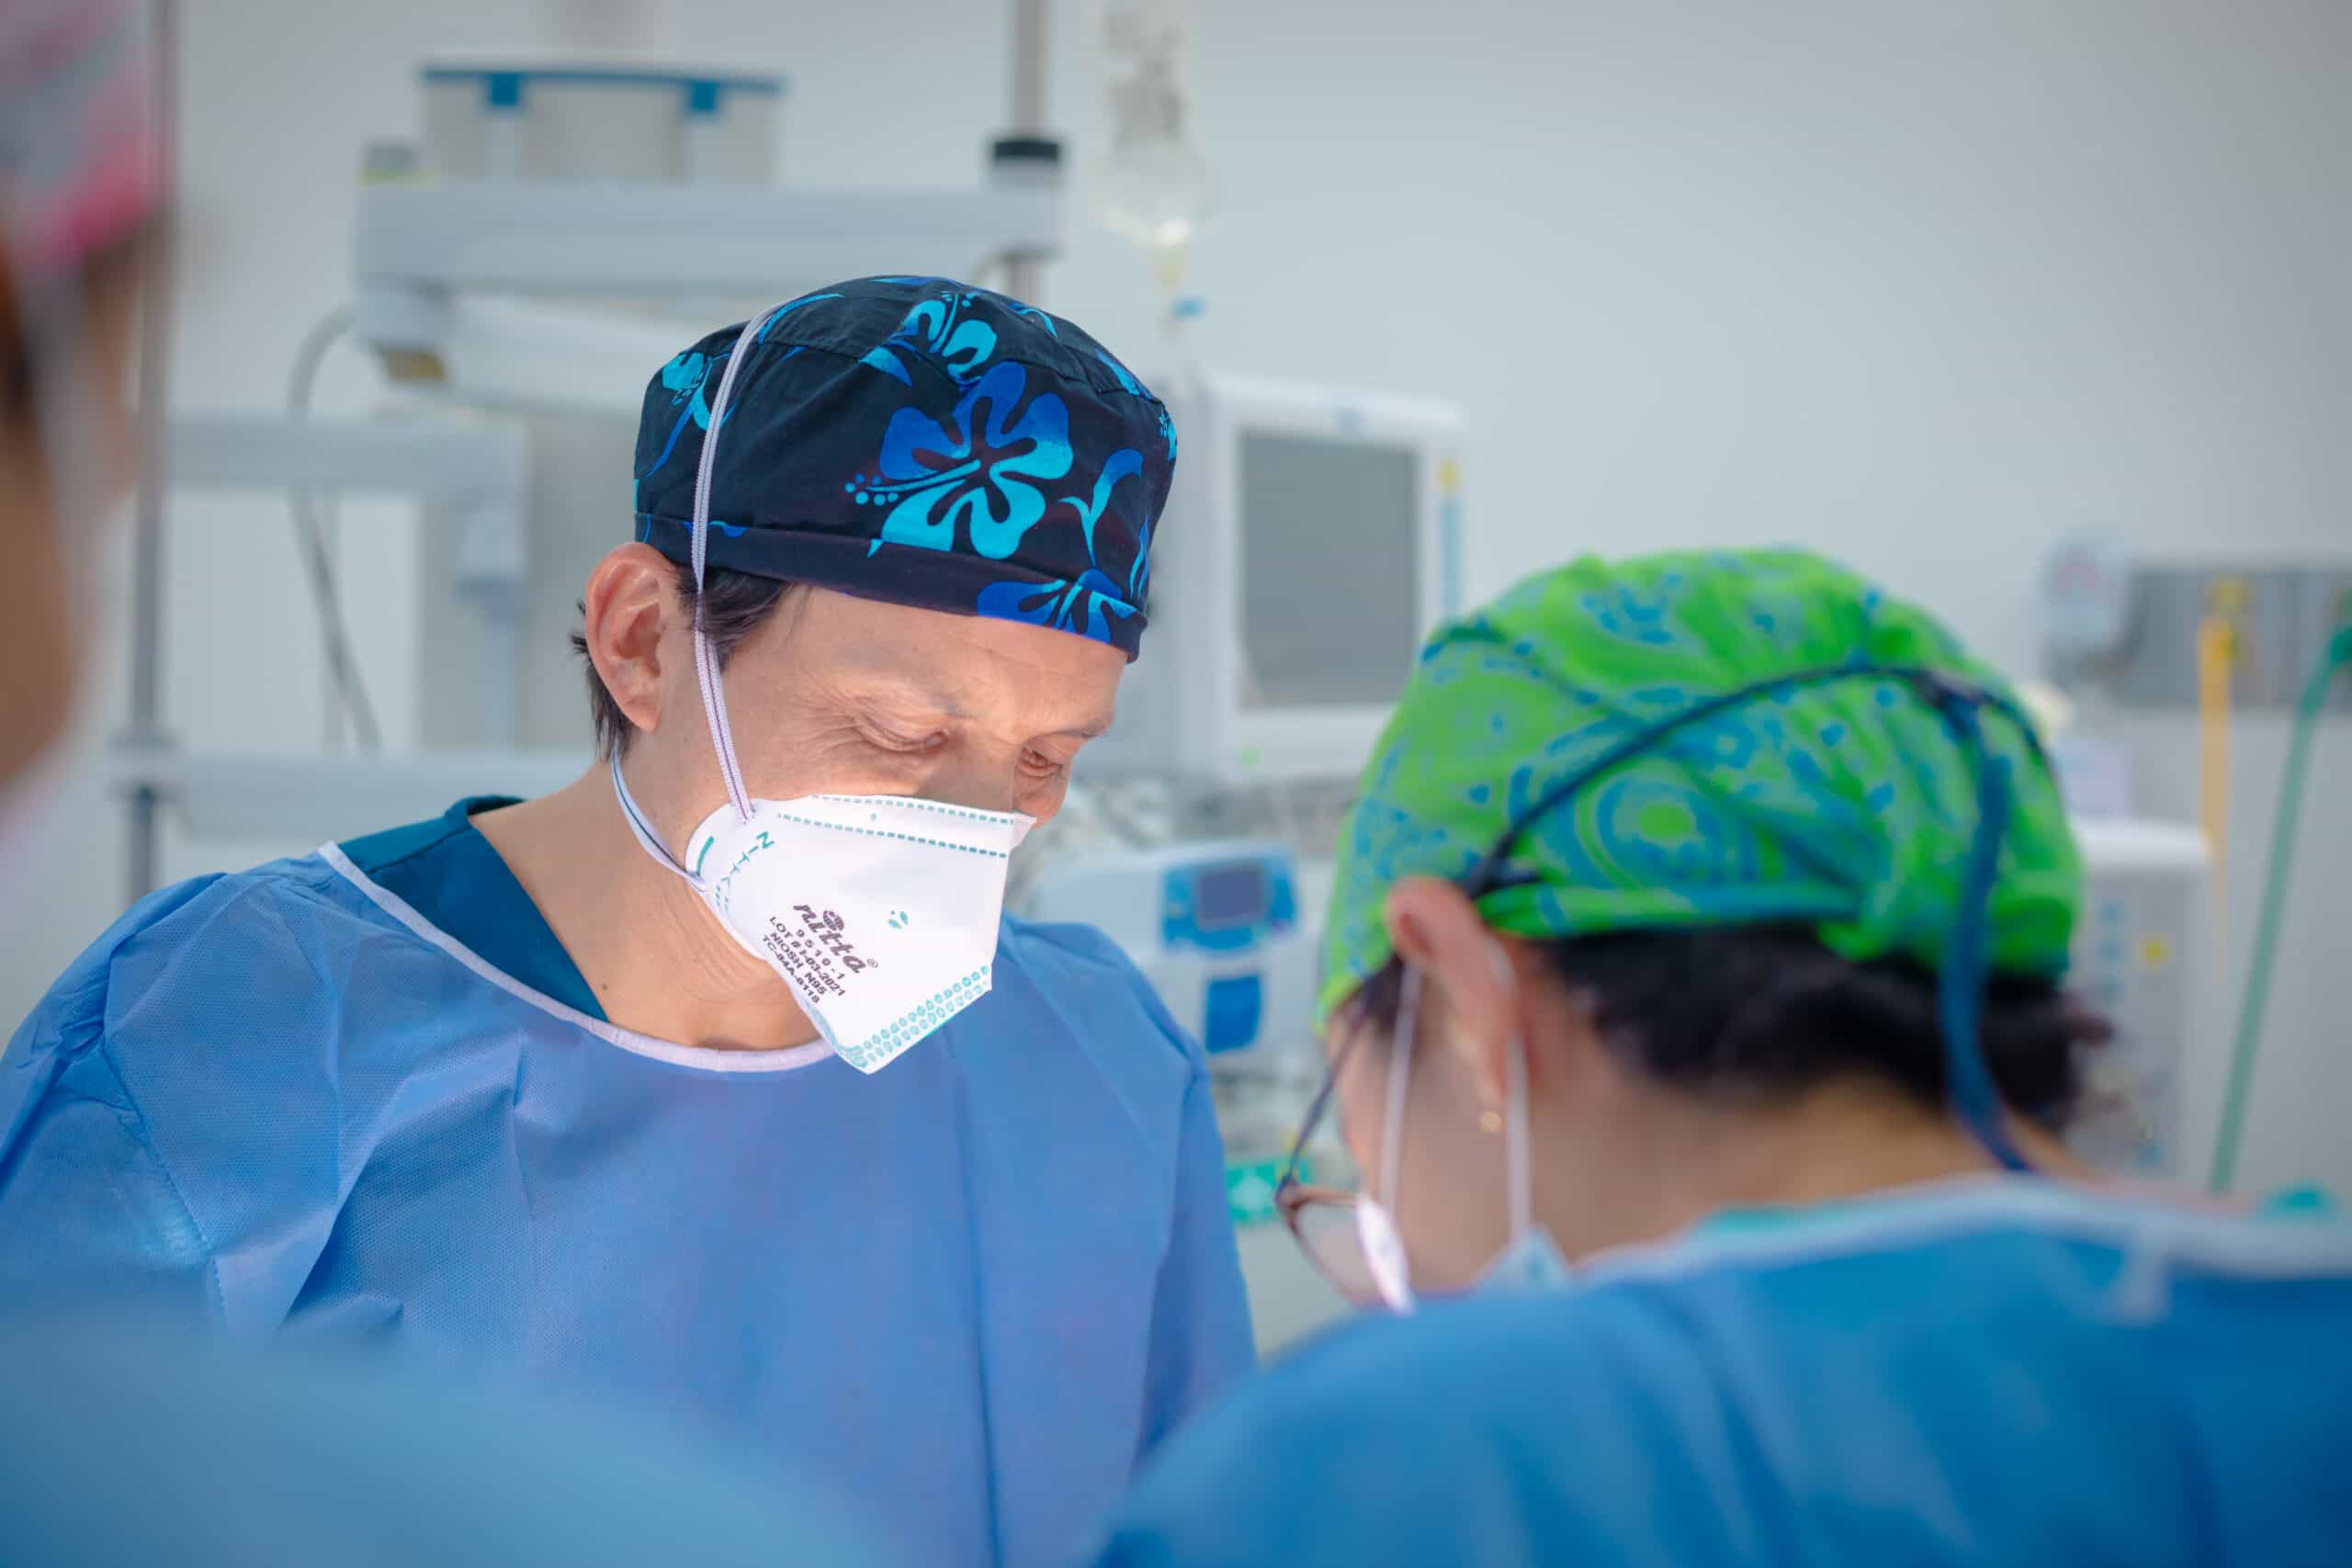 Dr. Mauricio Herrera - Plastic surgeon Colombia - Premium Care Plastic Surgery